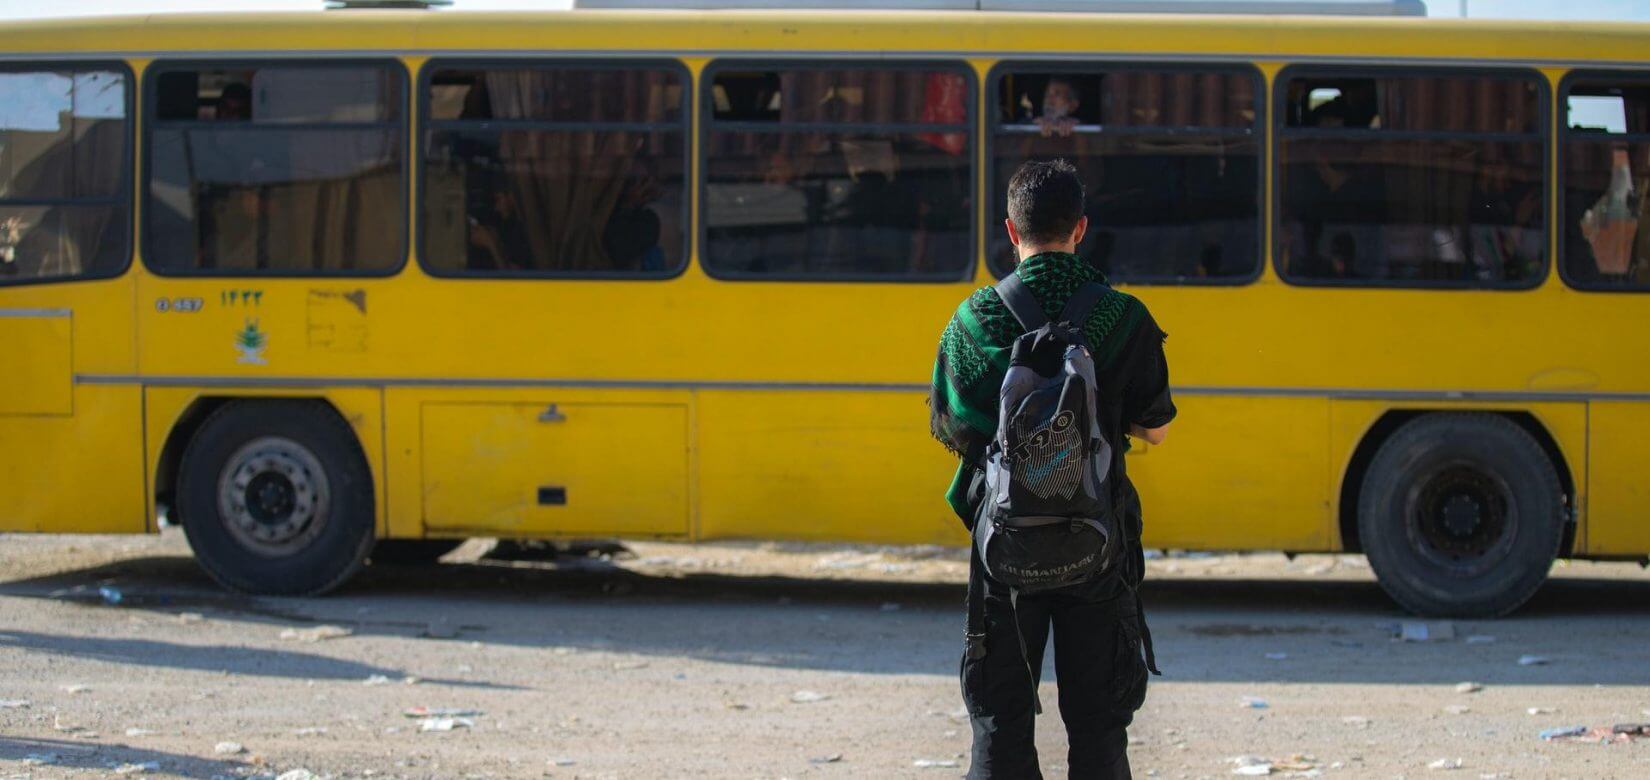 Σχολικό λεωφορείο συγκρούστηκε με φορτηγό - Έξι παιδιά τραυματίστηκαν ελαφρά